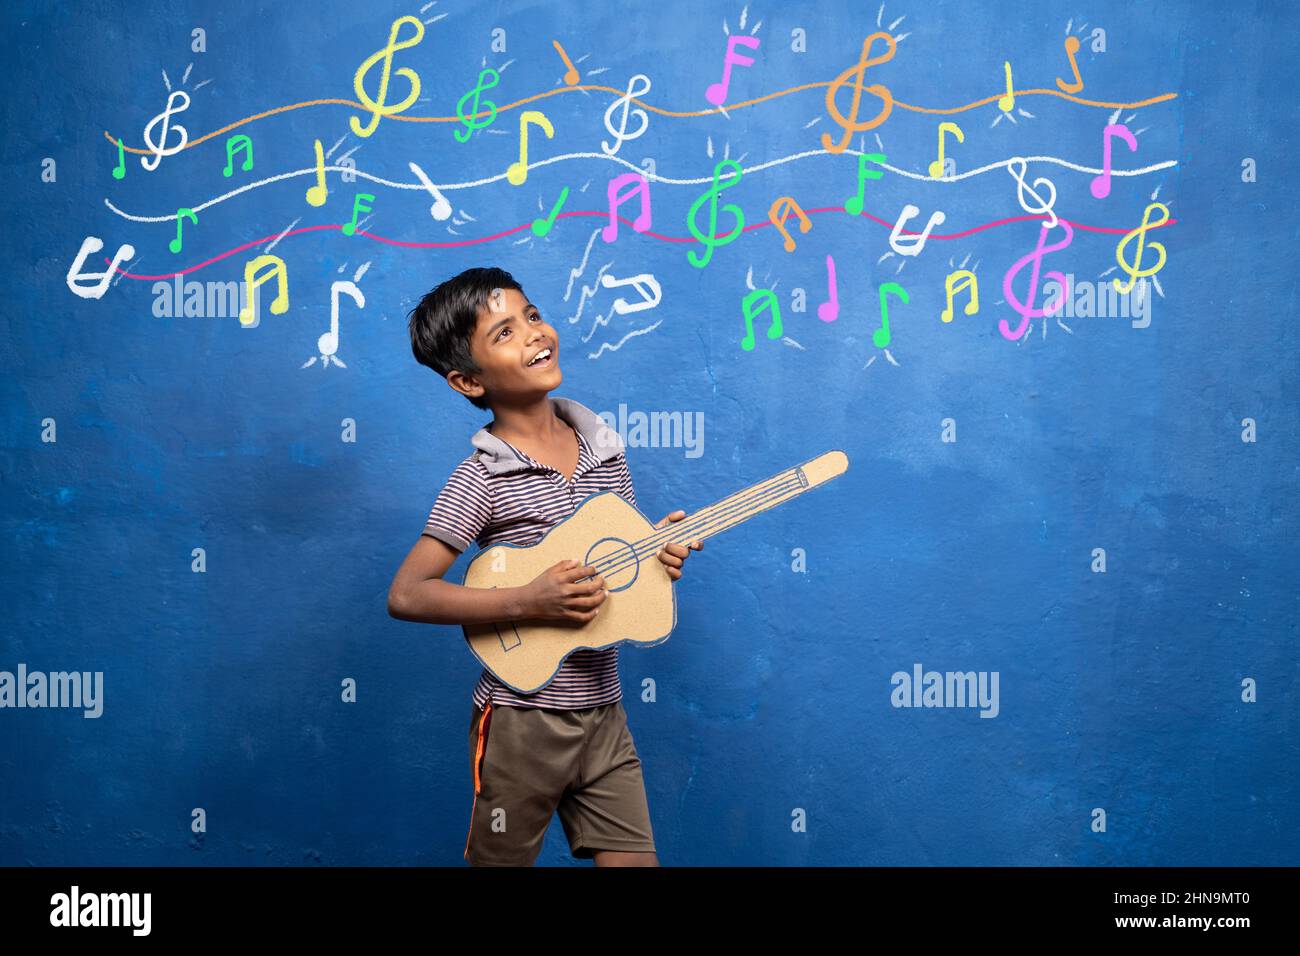 Happy Kid genießt es, mit Pappgitarre mit musikalischen Zeichen an der Wand zu spielen - Konzept der Unterhaltung, Armut, Kindheitstraum für Rockstar. Stockfoto